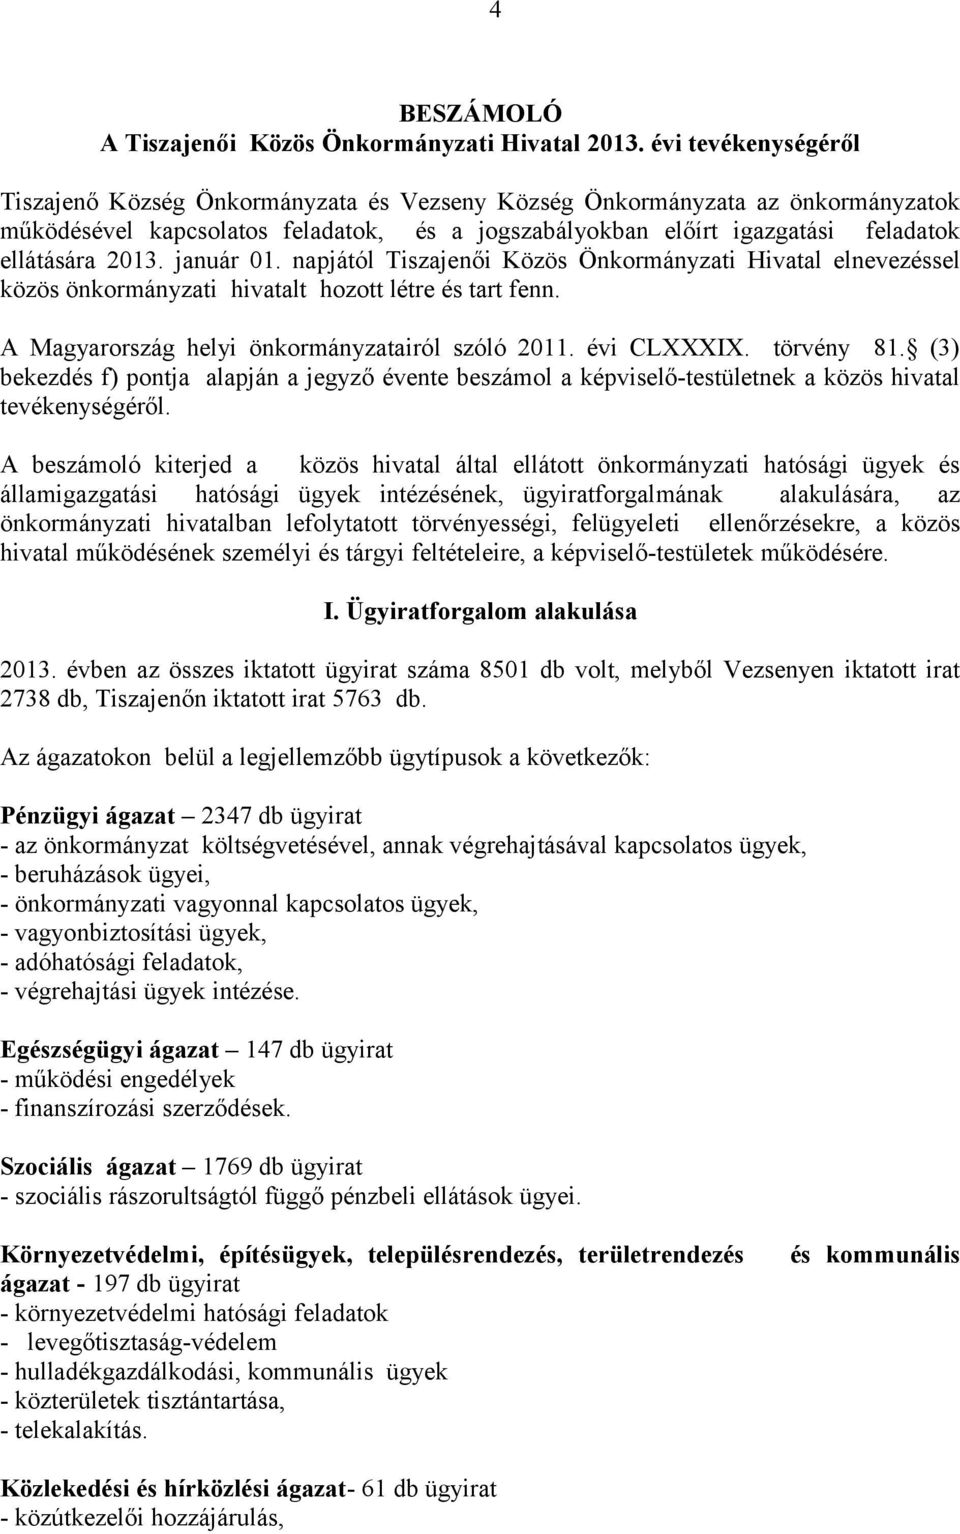 2013. január 01. napjától Tiszajenői Közös Önkormányzati Hivatal elnevezéssel közös önkormányzati hivatalt hozott létre és tart fenn. A Magyarország helyi önkormányzatairól szóló 2011. évi CLXXXIX.